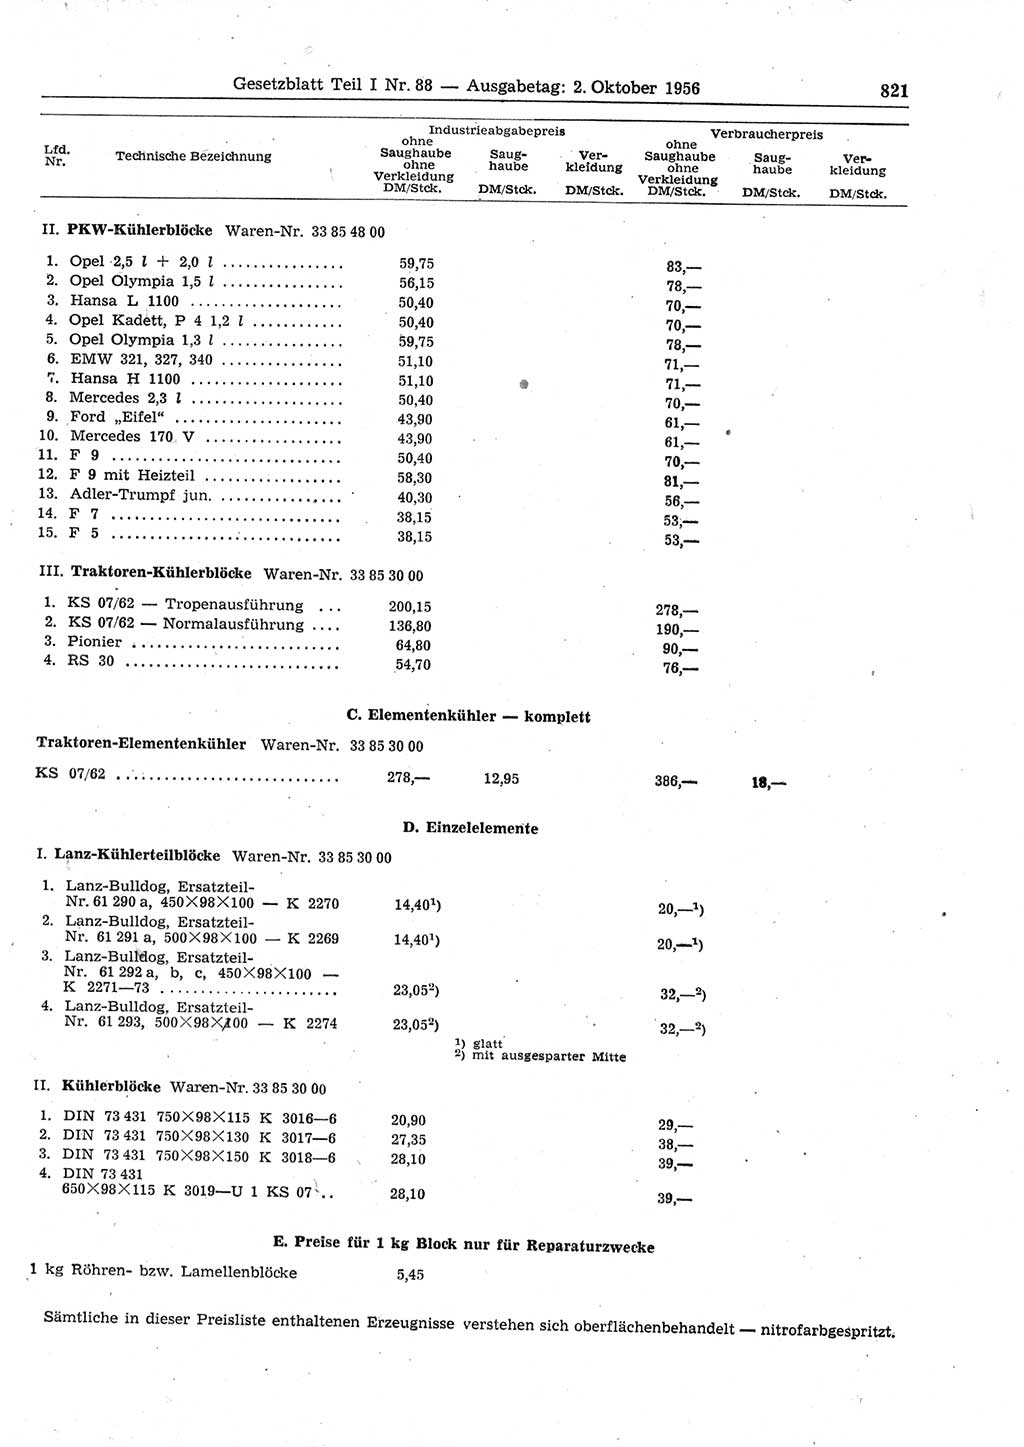 Gesetzblatt (GBl.) der Deutschen Demokratischen Republik (DDR) Teil Ⅰ 1956, Seite 821 (GBl. DDR Ⅰ 1956, S. 821)